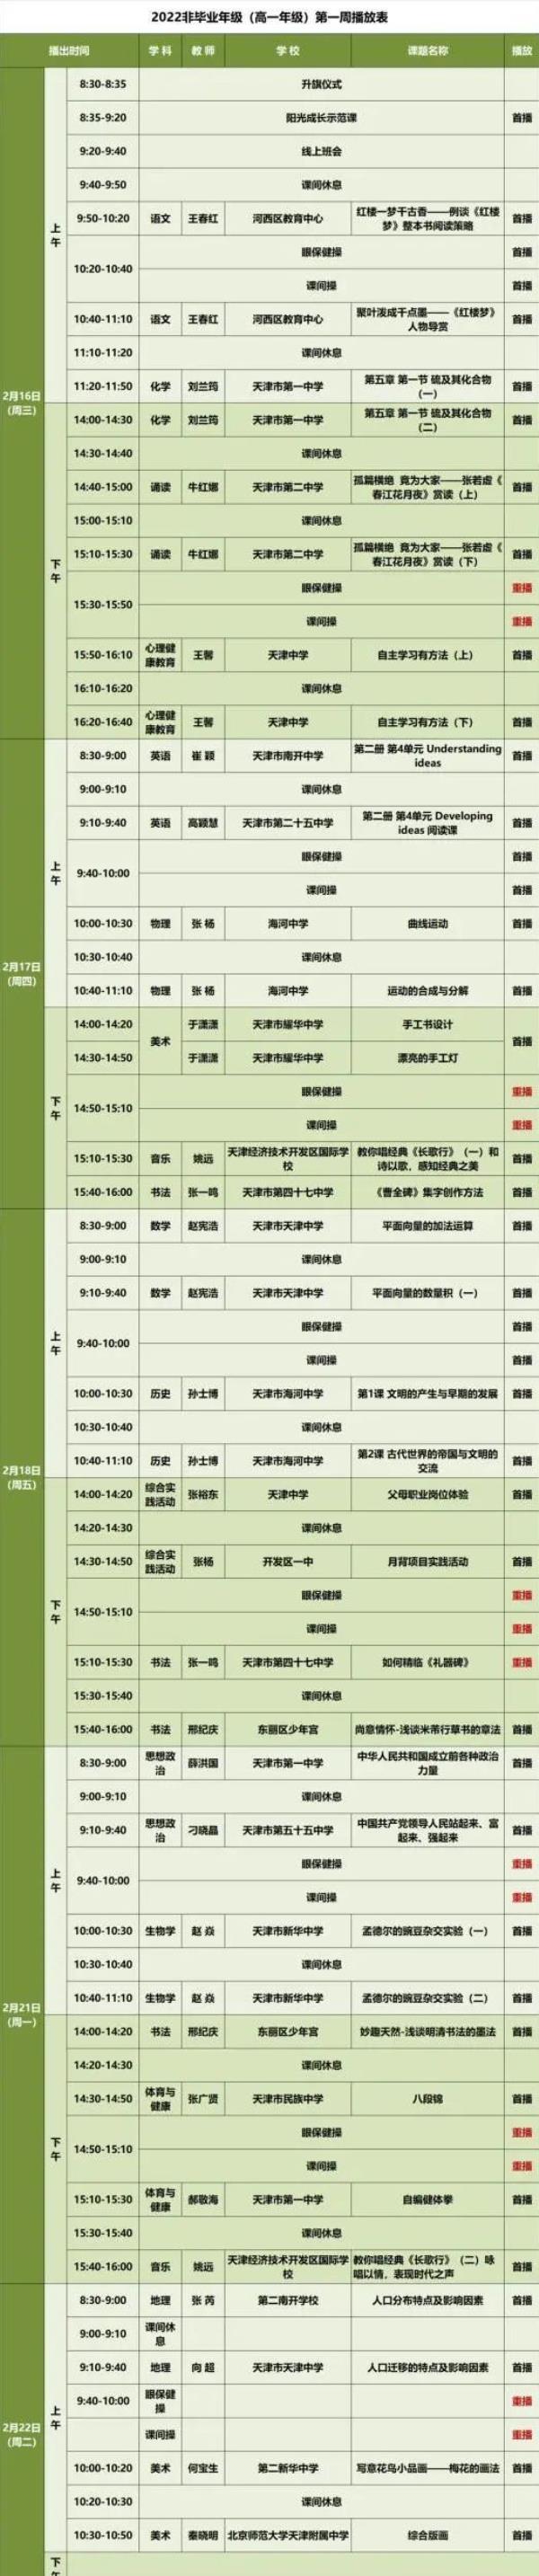 天津中小学生课程表